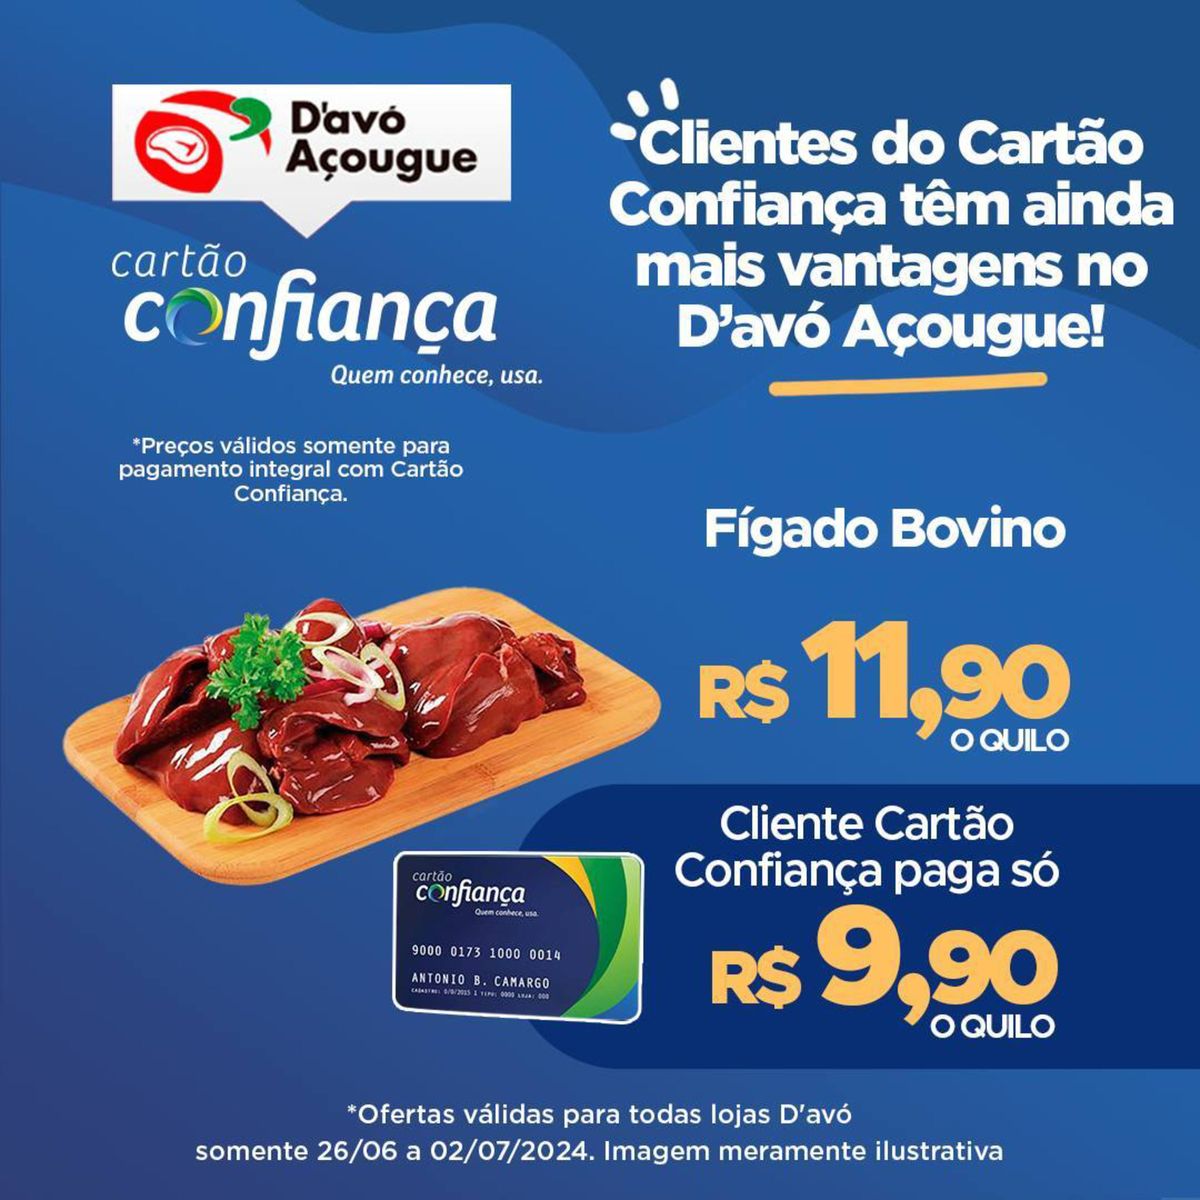 Ofertas para os Clientes do Cartão Confiança: Fígado Bovino por R$11,90 o quilo